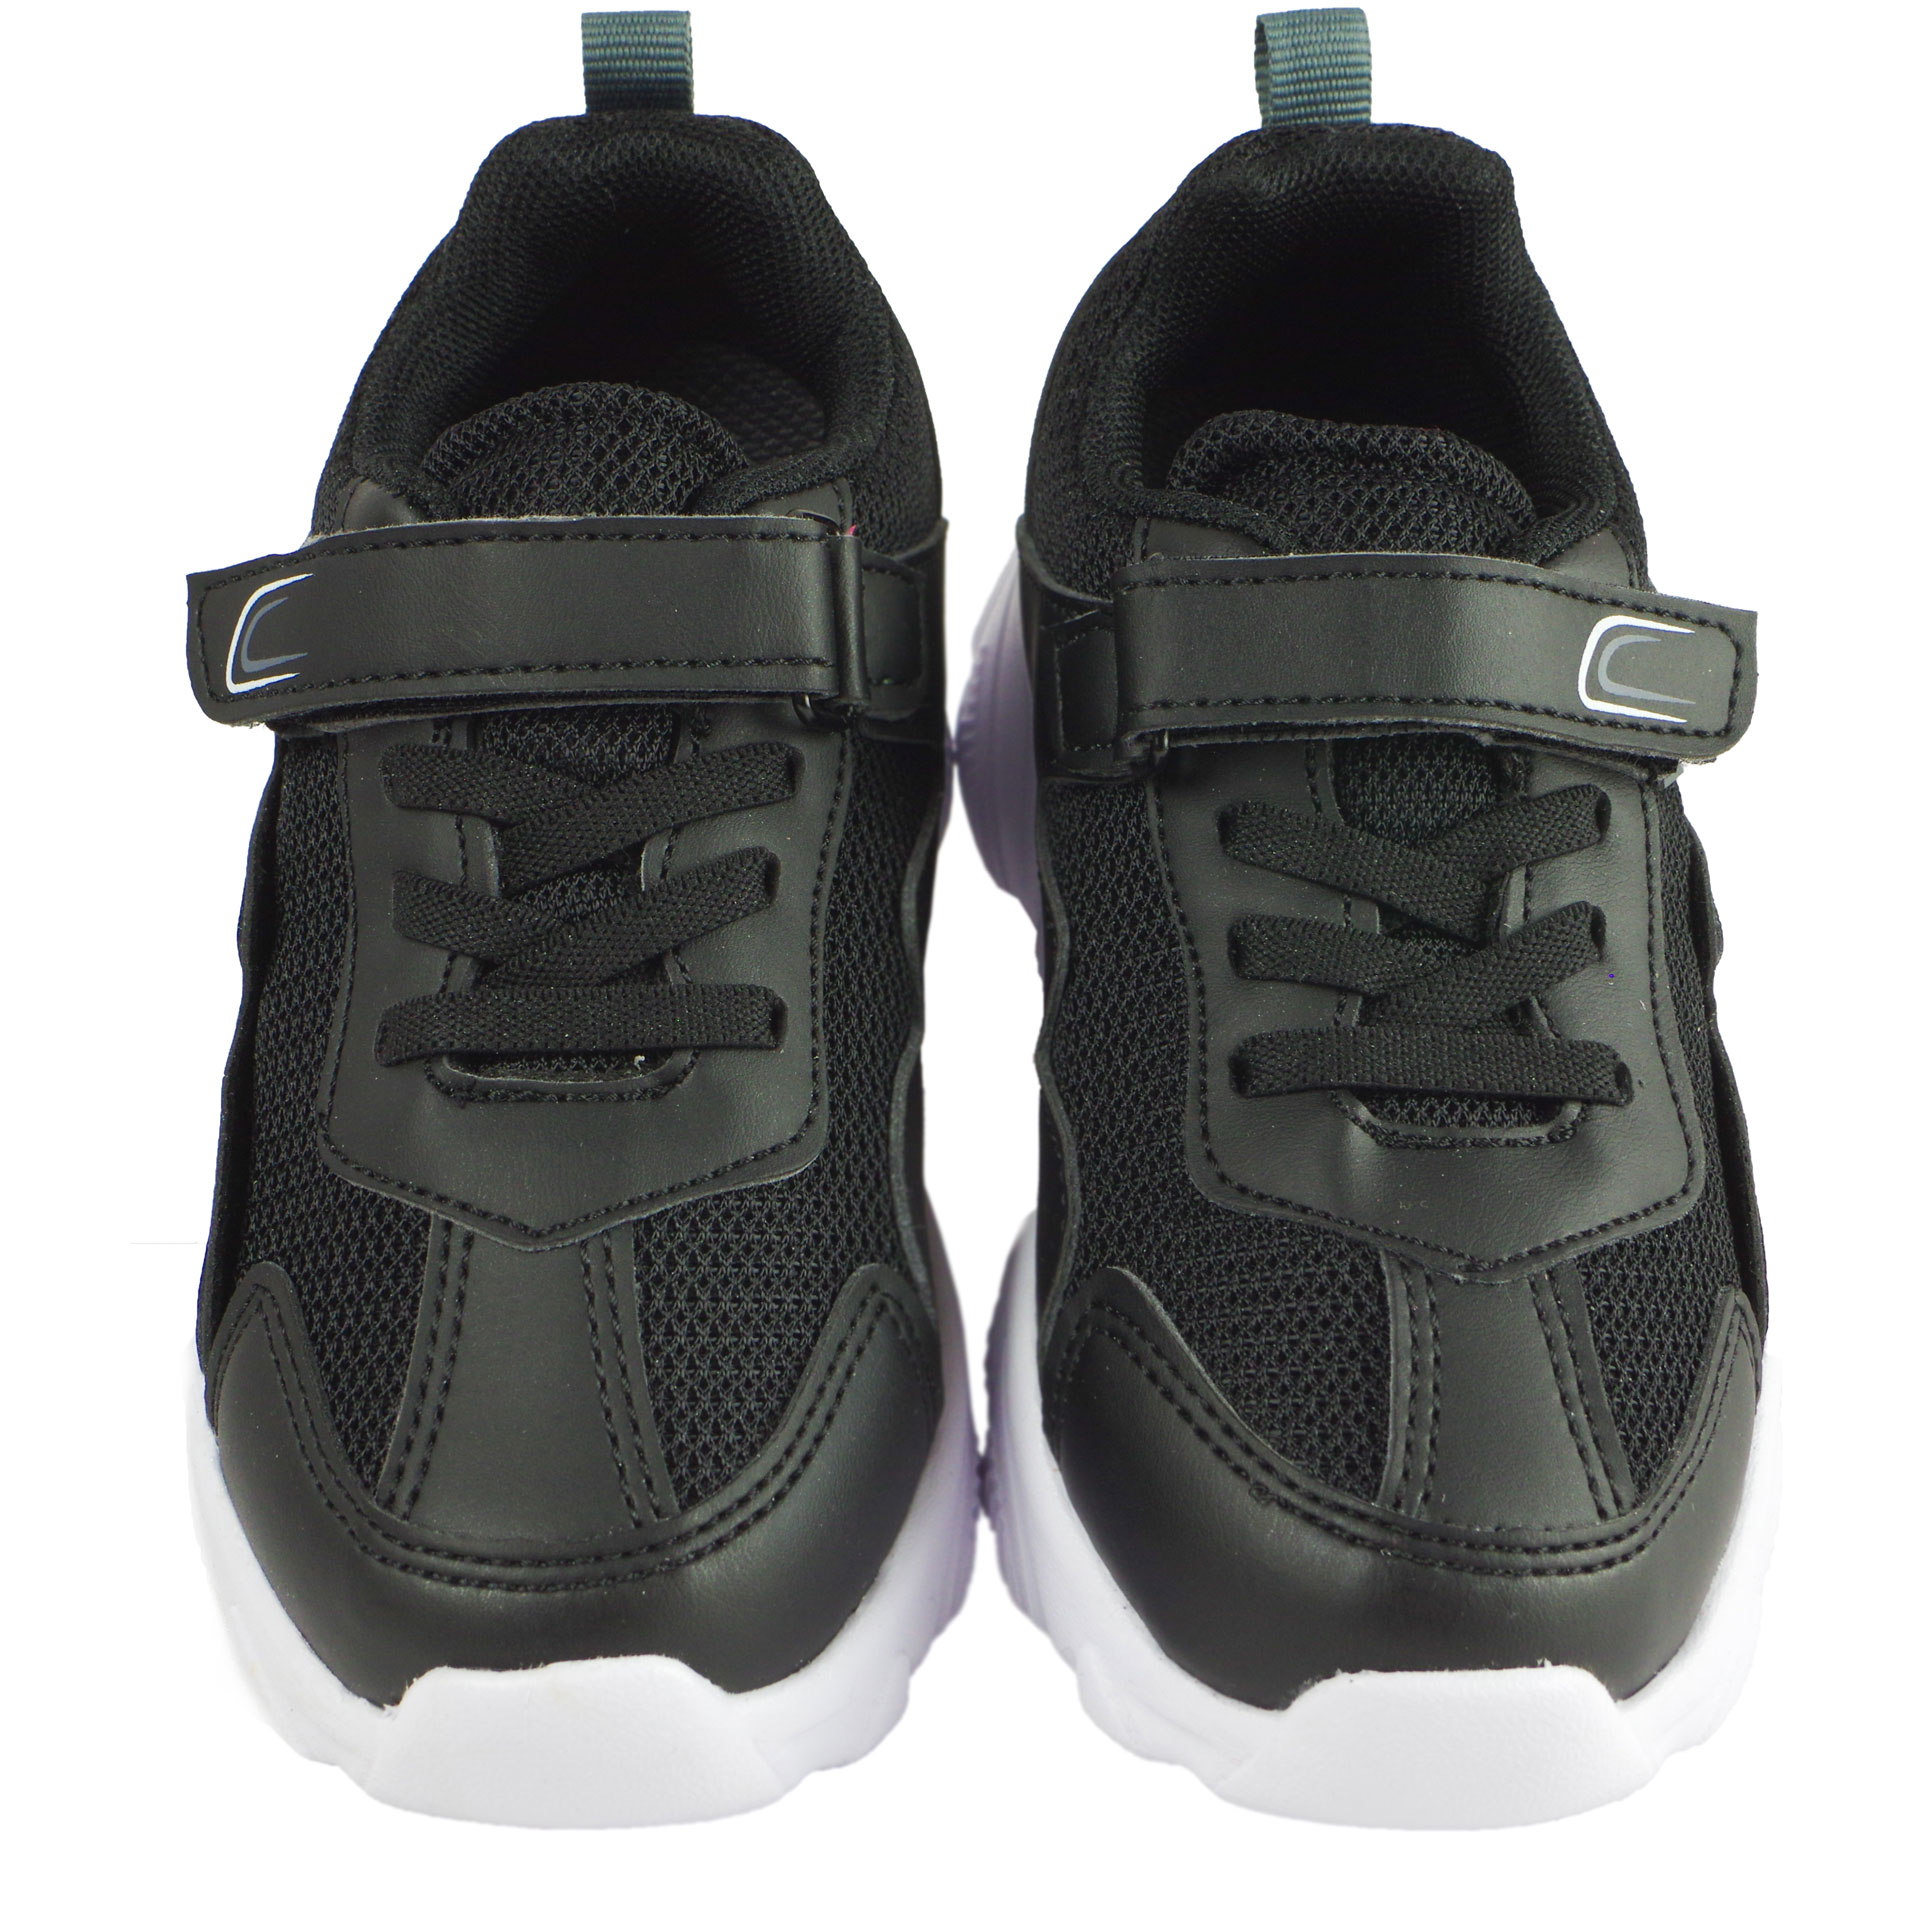 Кросівки для хлопчика (2031) для хлопчика, матеріал Текстиль, Чорний колір, 31-35 розміри – Sole Kids. Фото 3